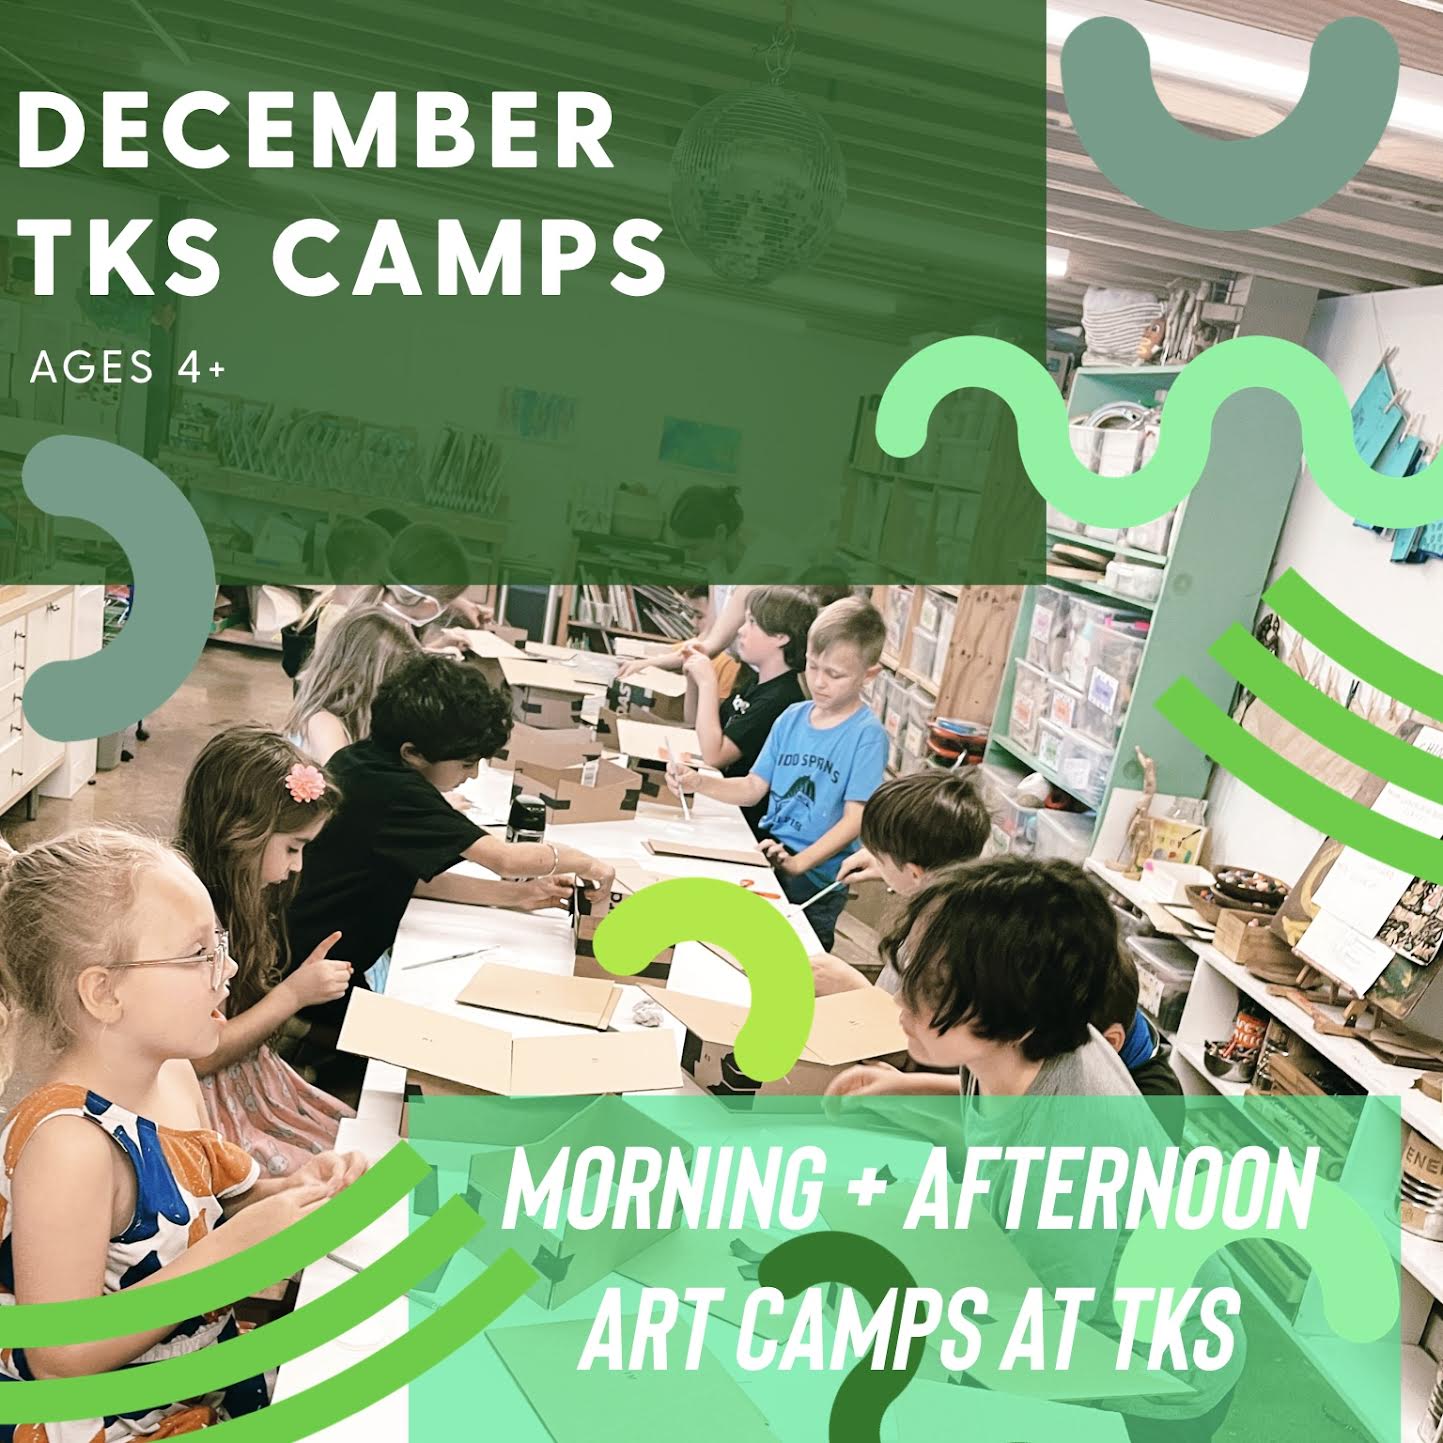 Dec 18-22 Kessler School Art Camps